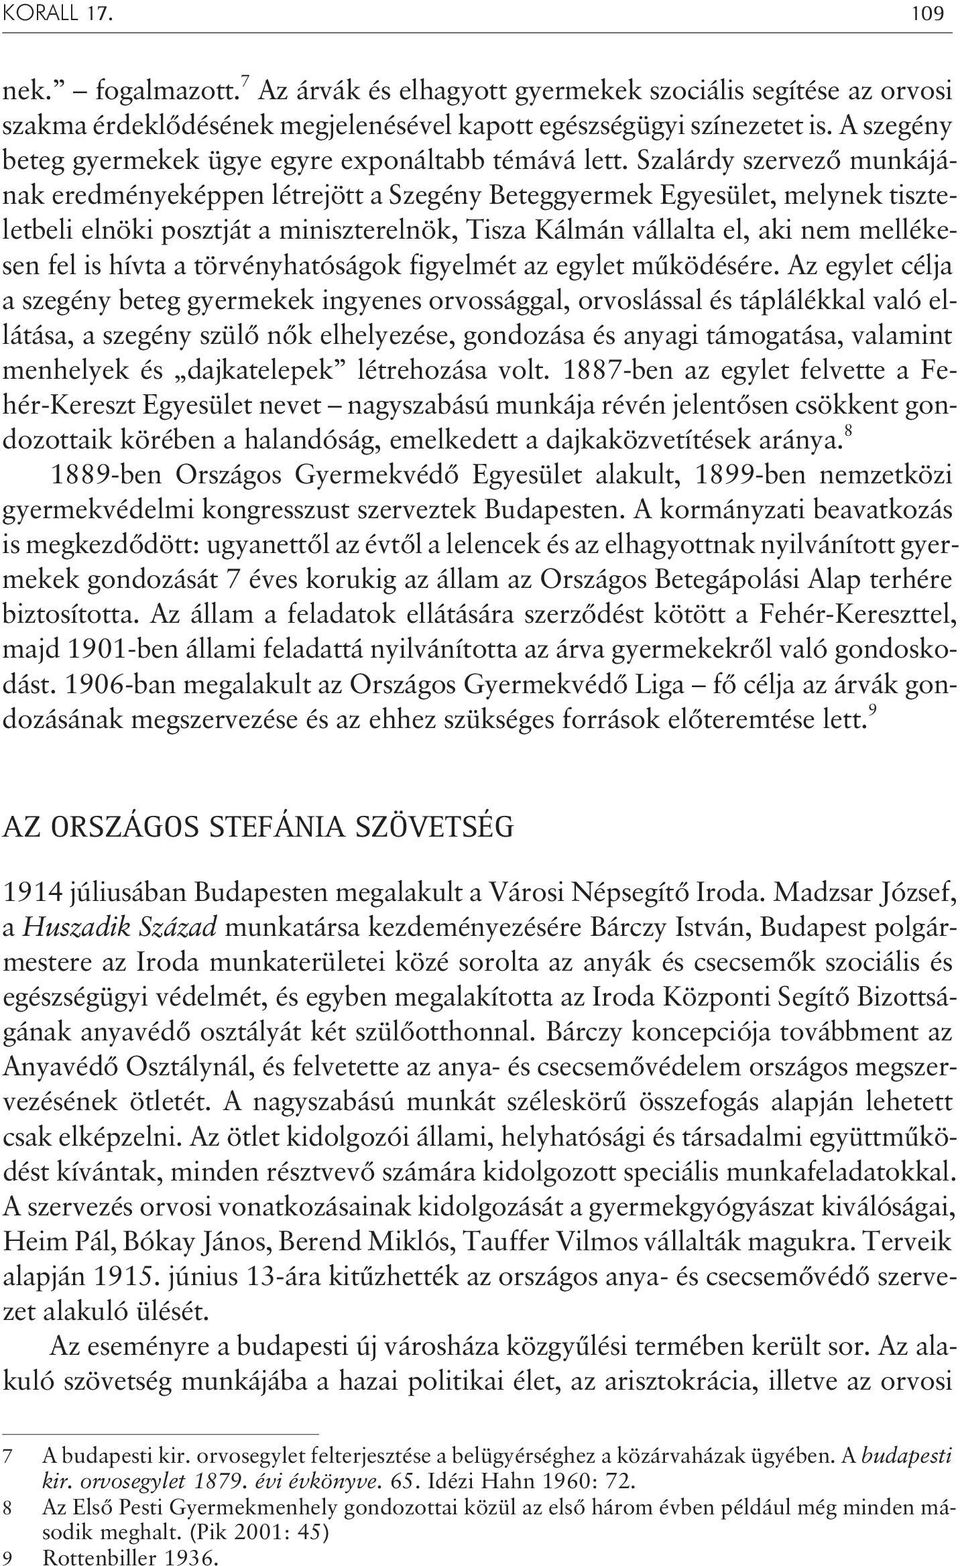 Szalárdy szervezõ munkájának eredményeképpen létrejött a Szegény Beteggyermek Egyesület, melynek tiszteletbeli elnöki posztját a miniszterelnök, Tisza Kálmán vállalta el, aki nem mellékesen fel is